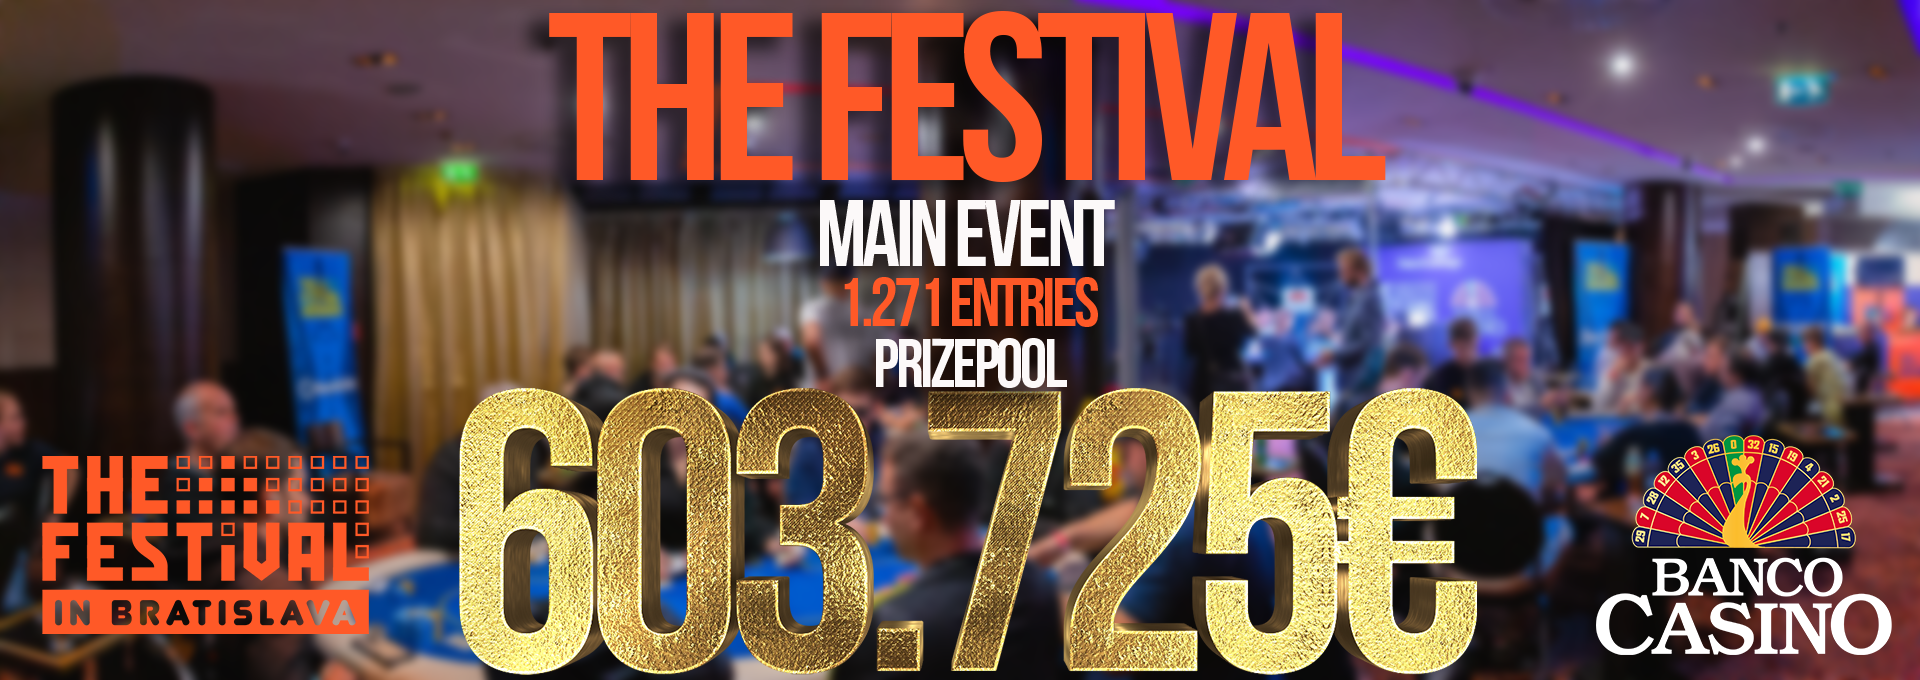 TheFestival Main Event so 1.271 entries a prizepoolom 603.725€ hľadá šampióna a ten si odnesie 126.650€!